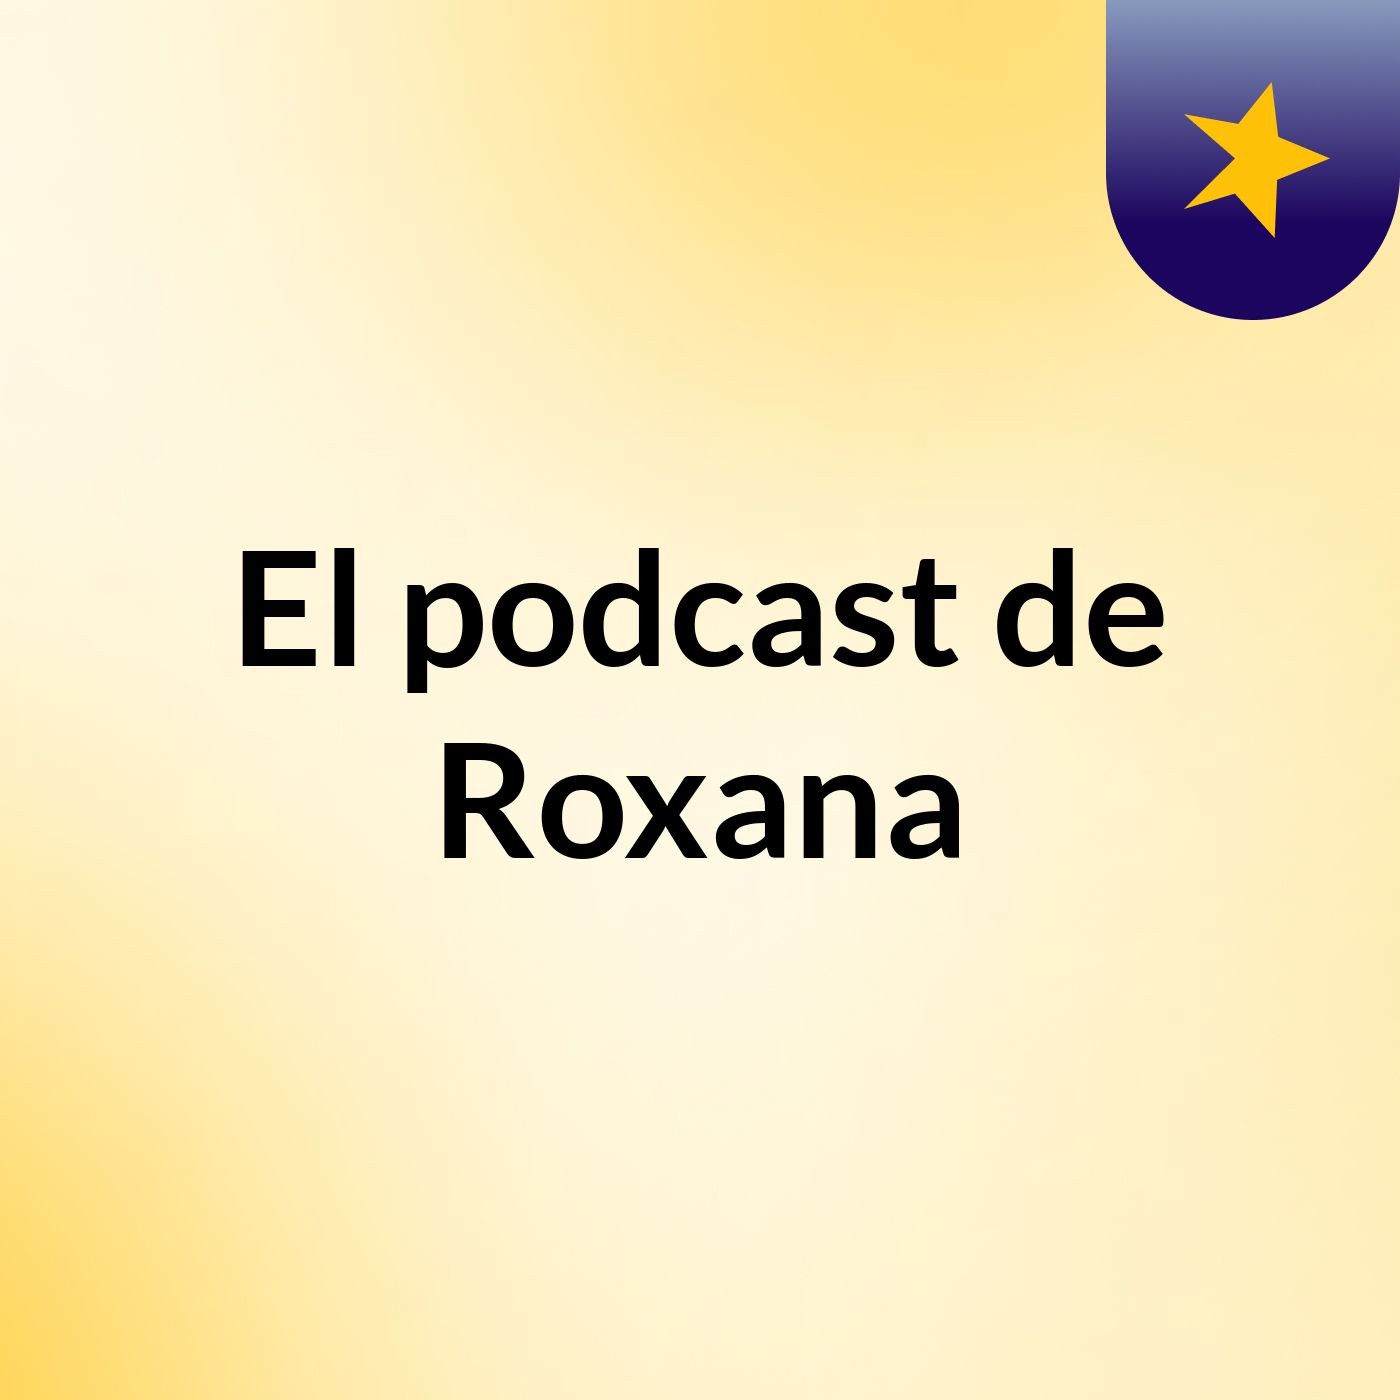 Episodio 2 - El podcast de Roxana